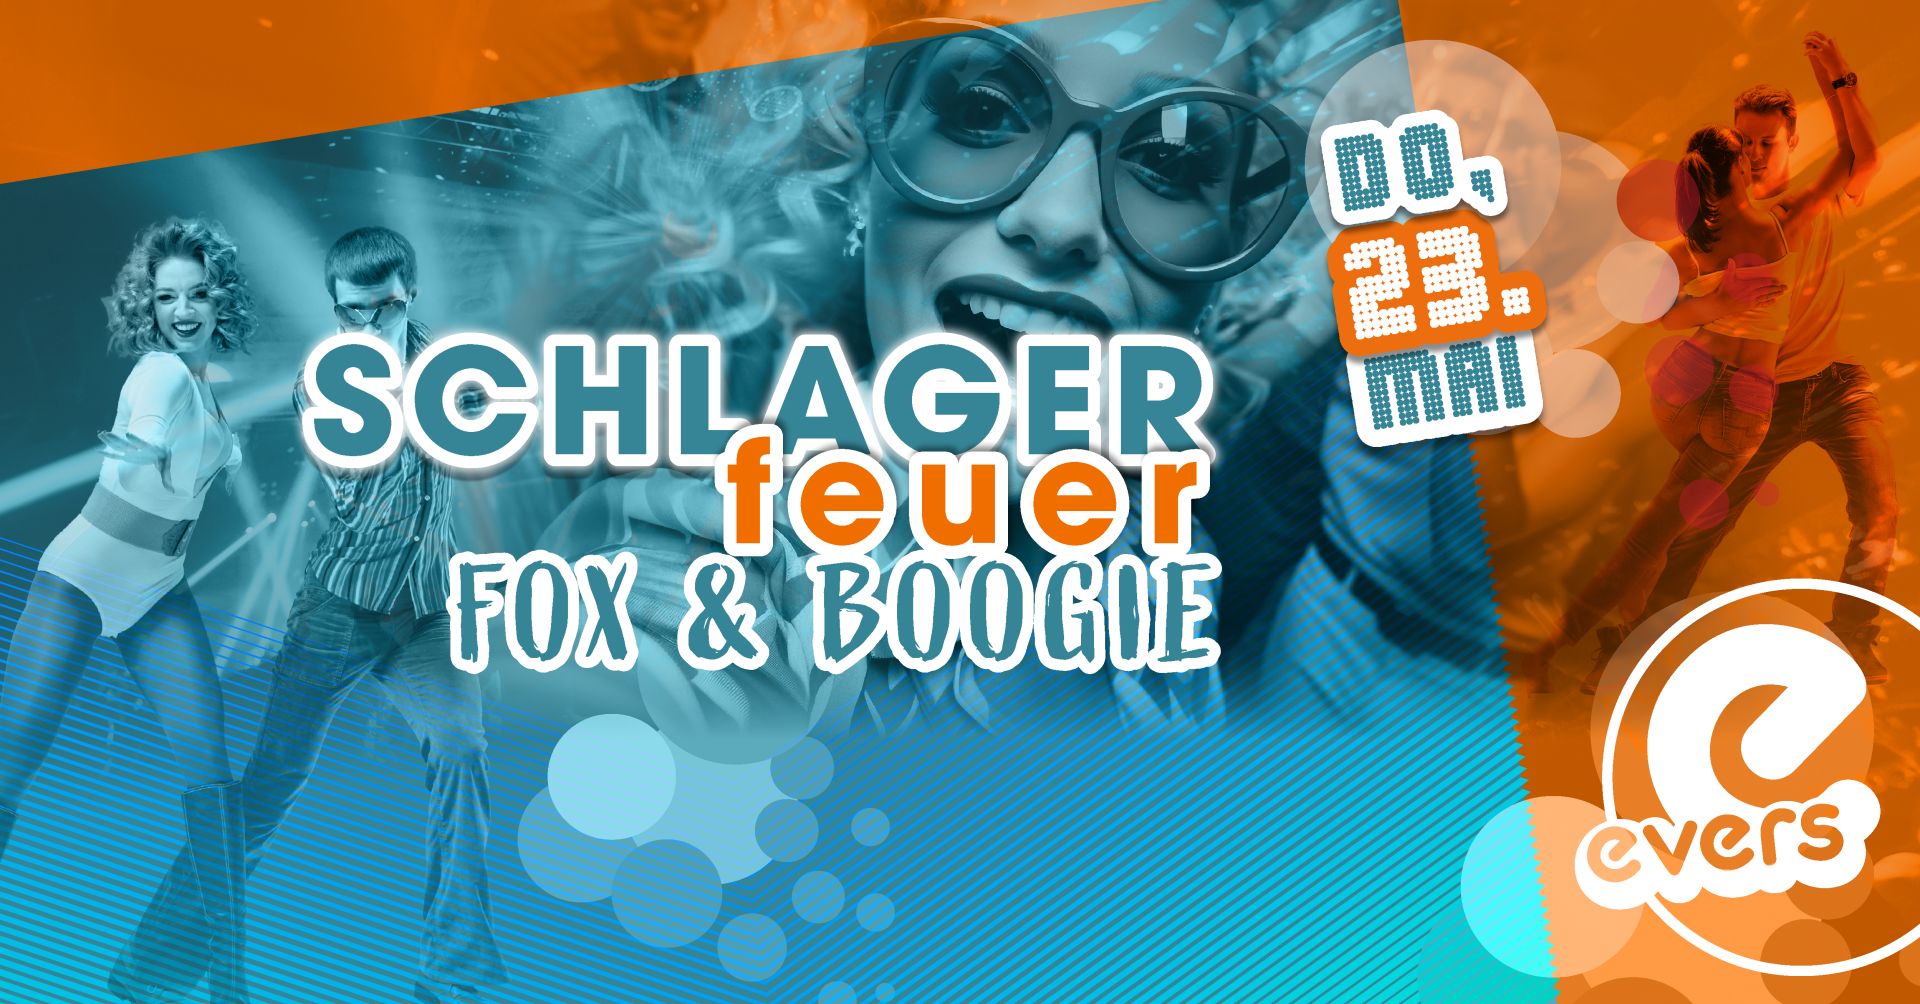 SCHLAGERFEUER, FOX & BOOGIE | DO 23.05.